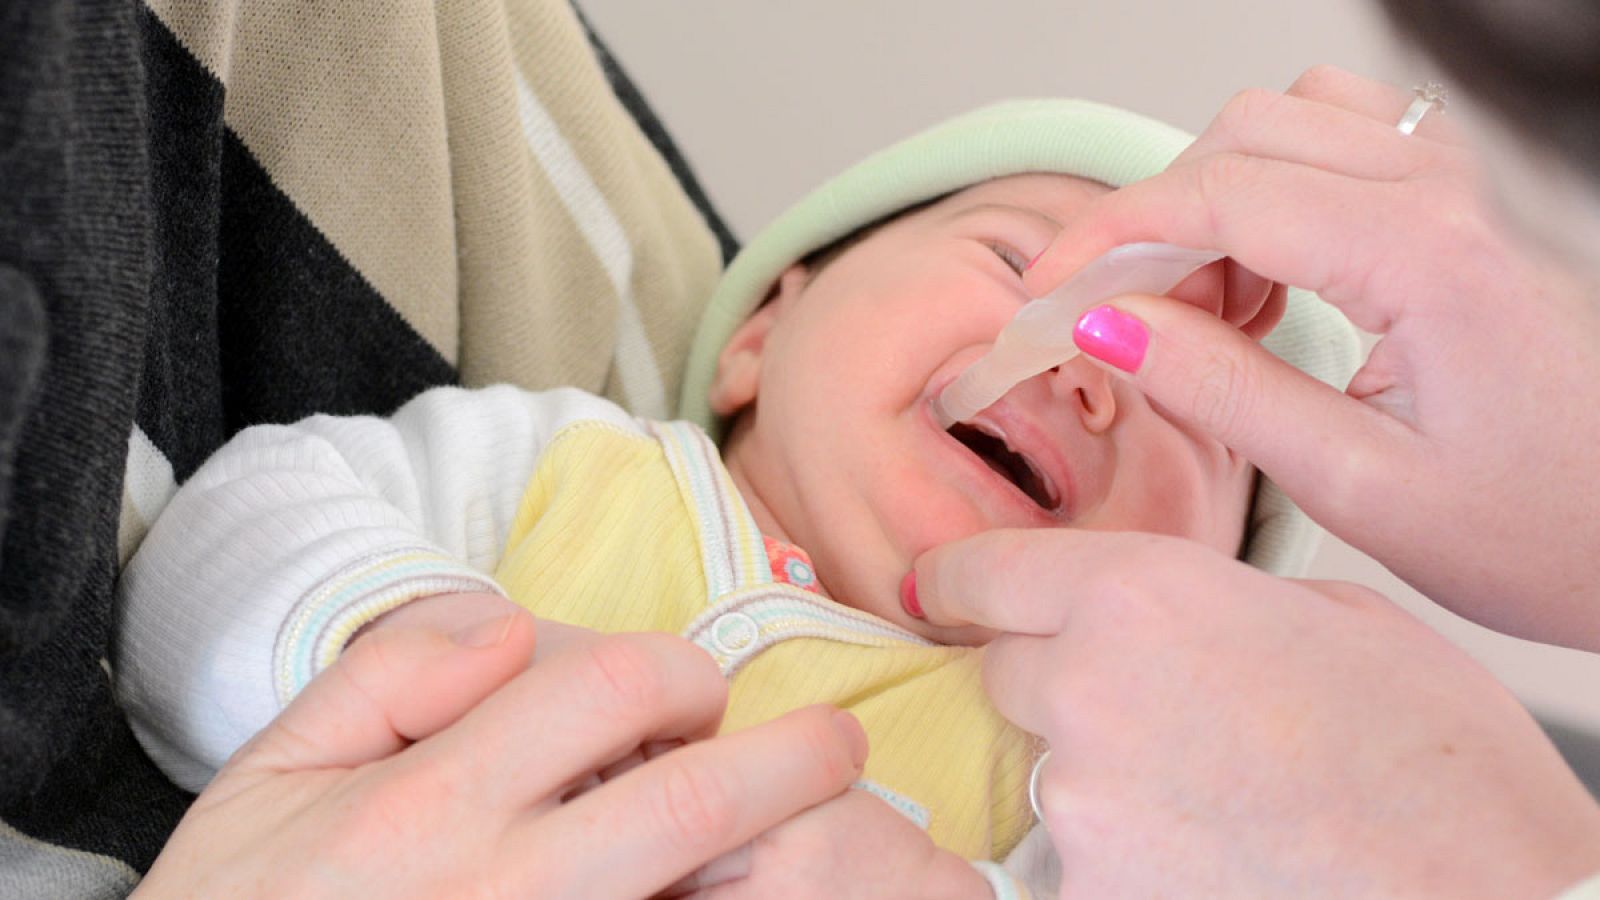 La vacuna contra la polio se administra varias veces en forma de gotas o inyecciones, y casi siempre protege al niño de por vida.